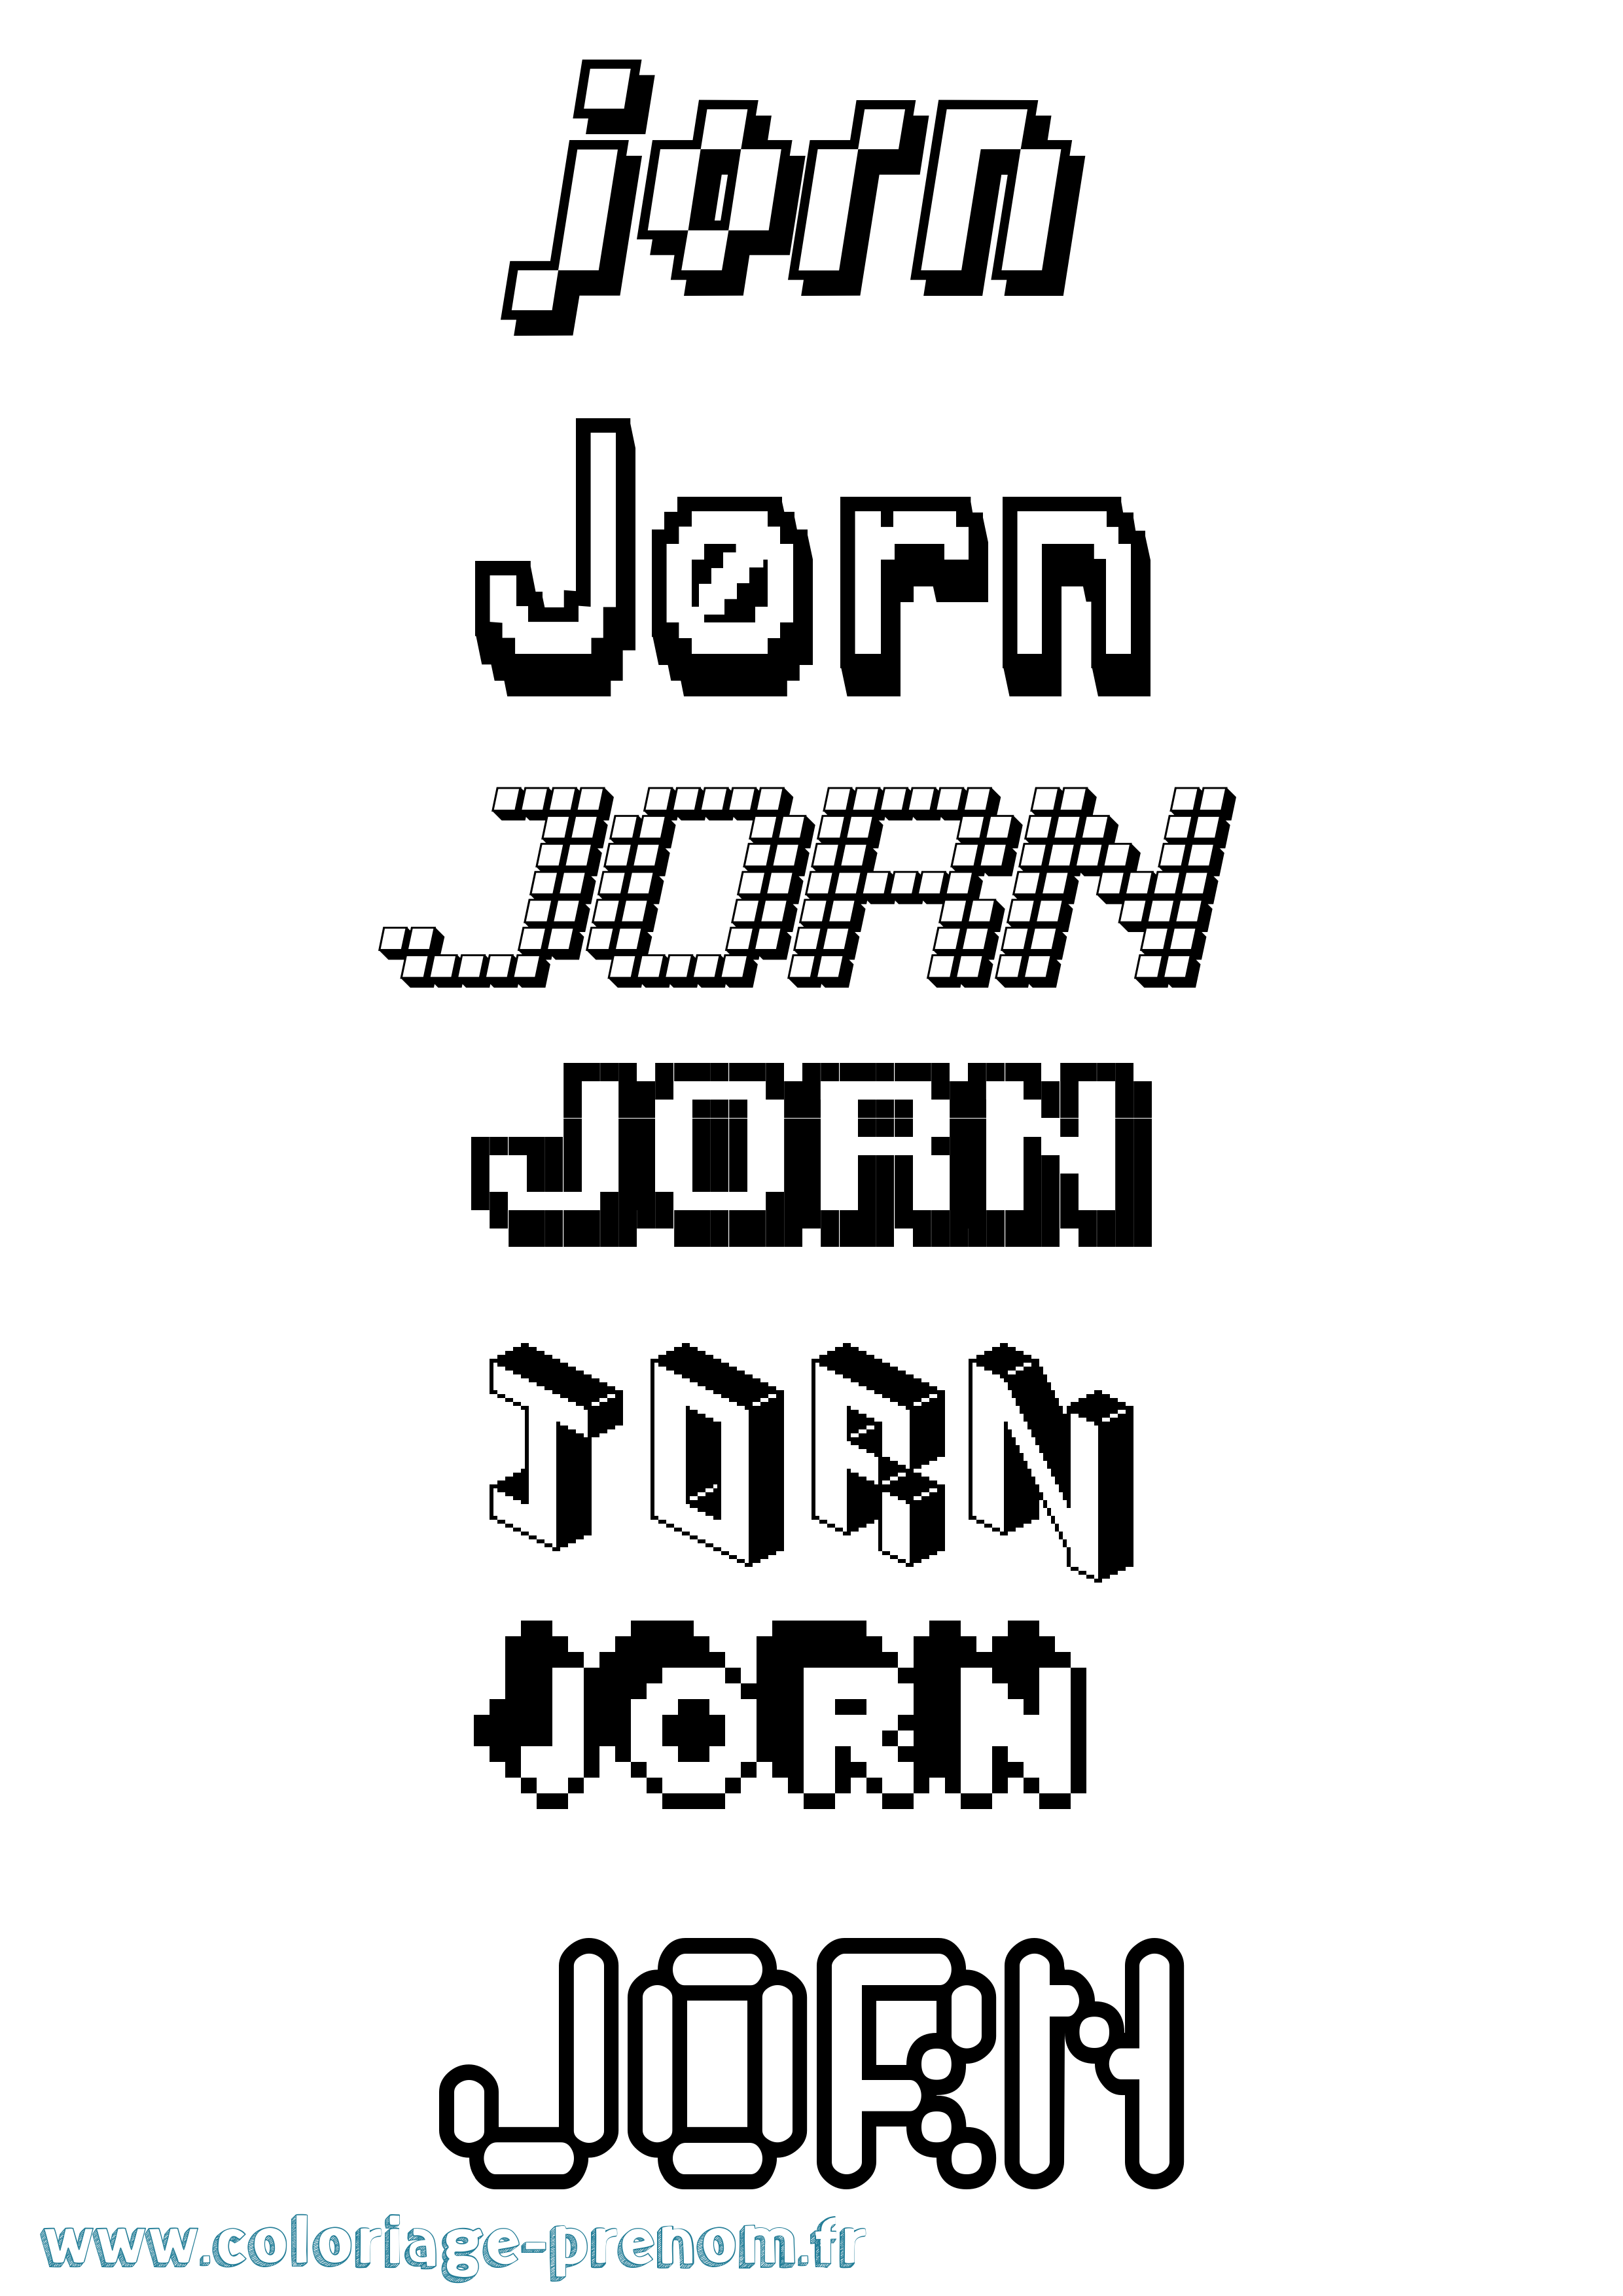 Coloriage prénom Jørn